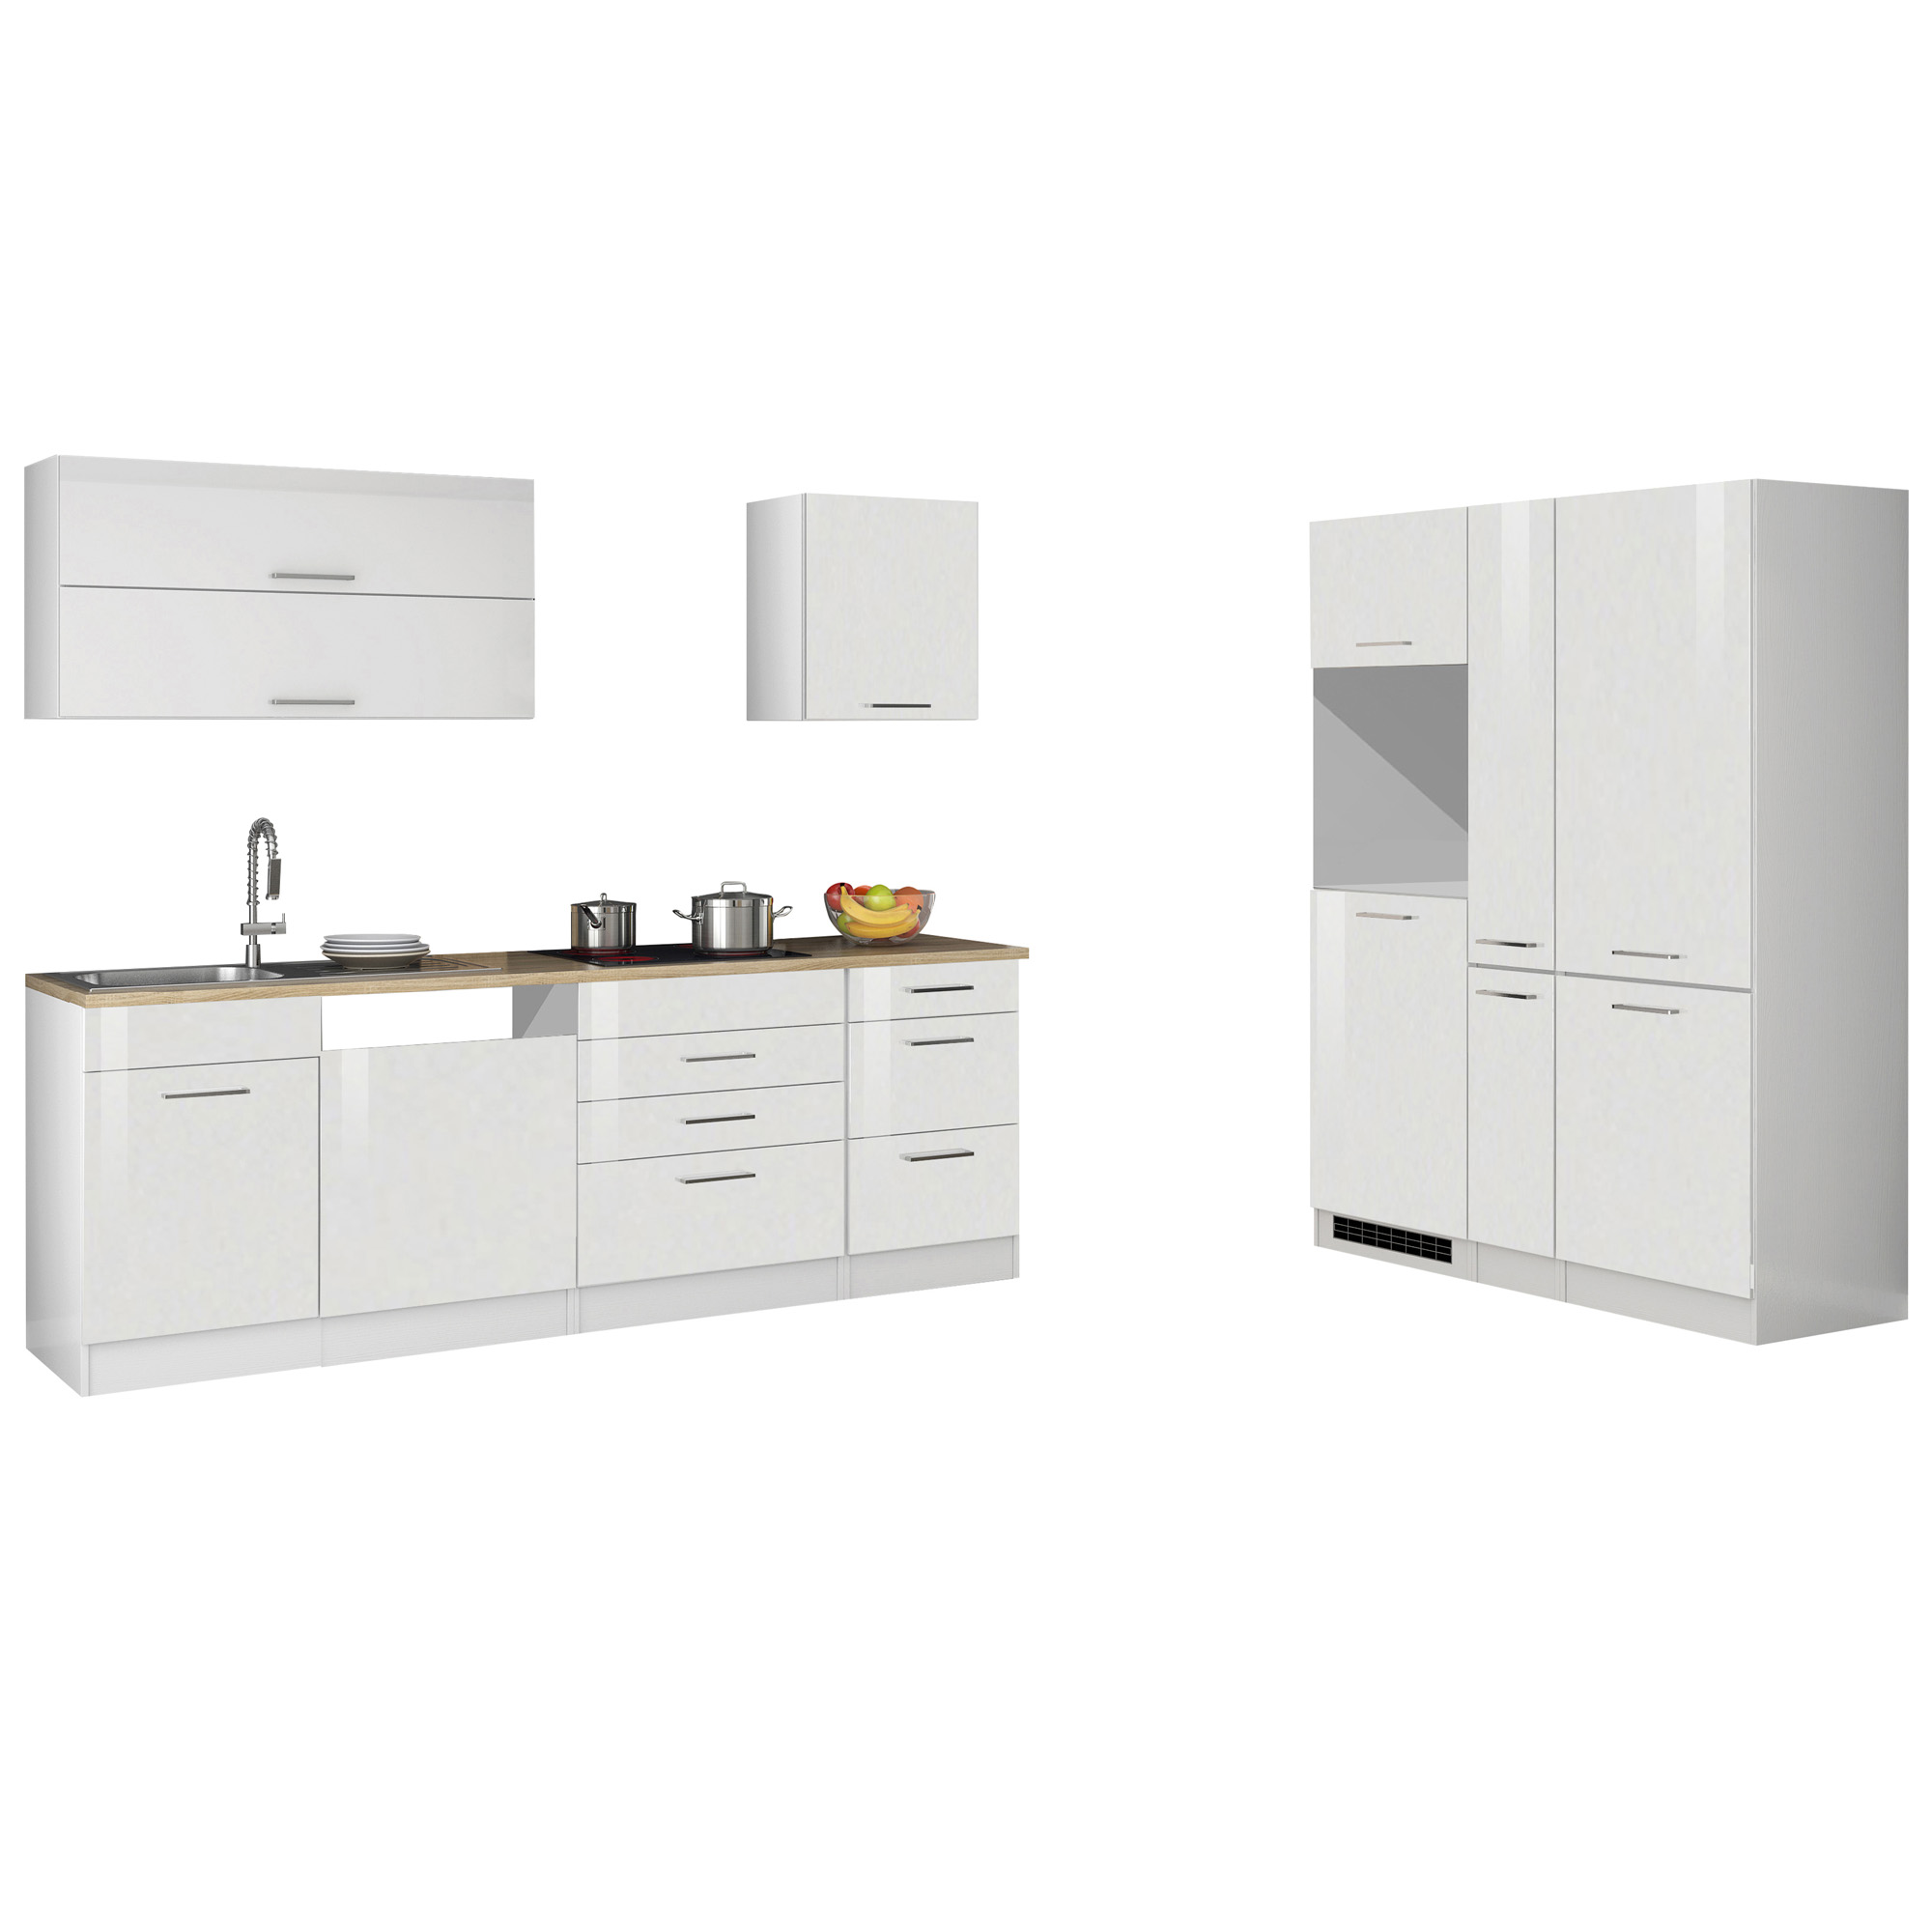 Küchenzeile MÜNCHEN, ohne E-Geräte - 390 cm breit - Weiß - Vario A